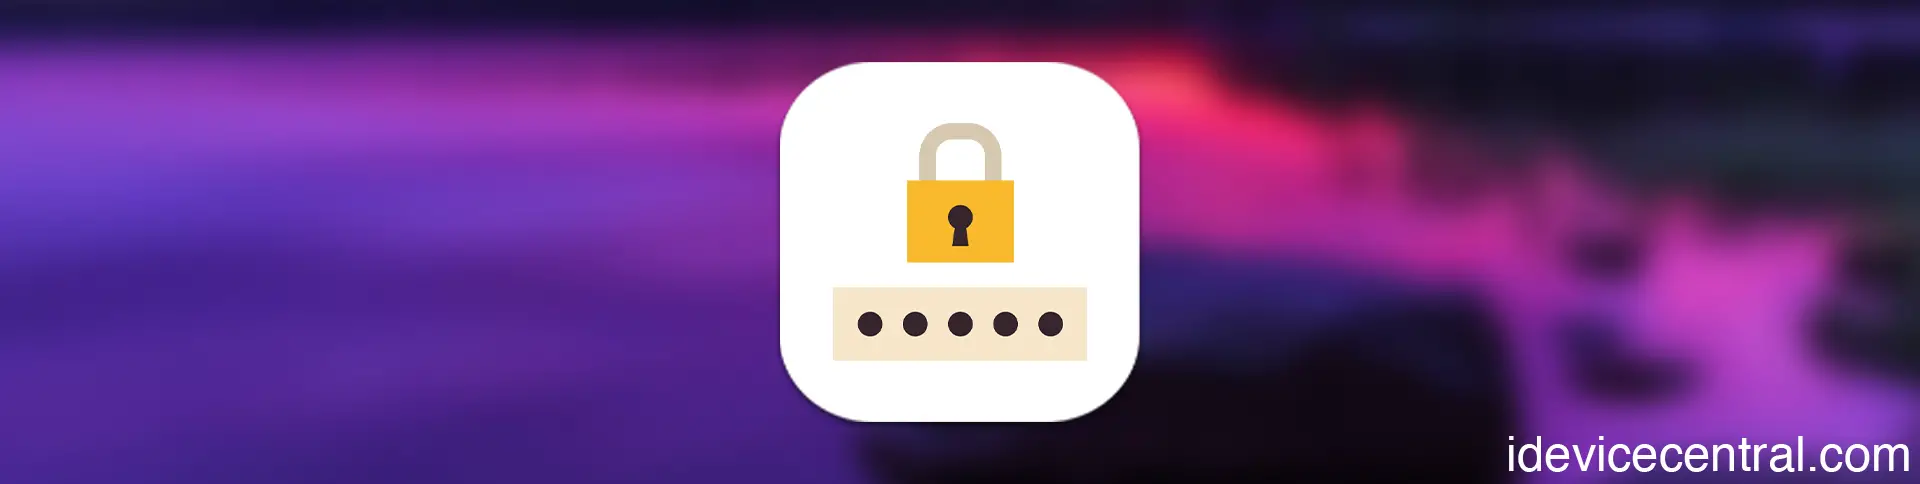 TunesKit iPhone Unlocker Review: Unlock iPhones Without Passcode